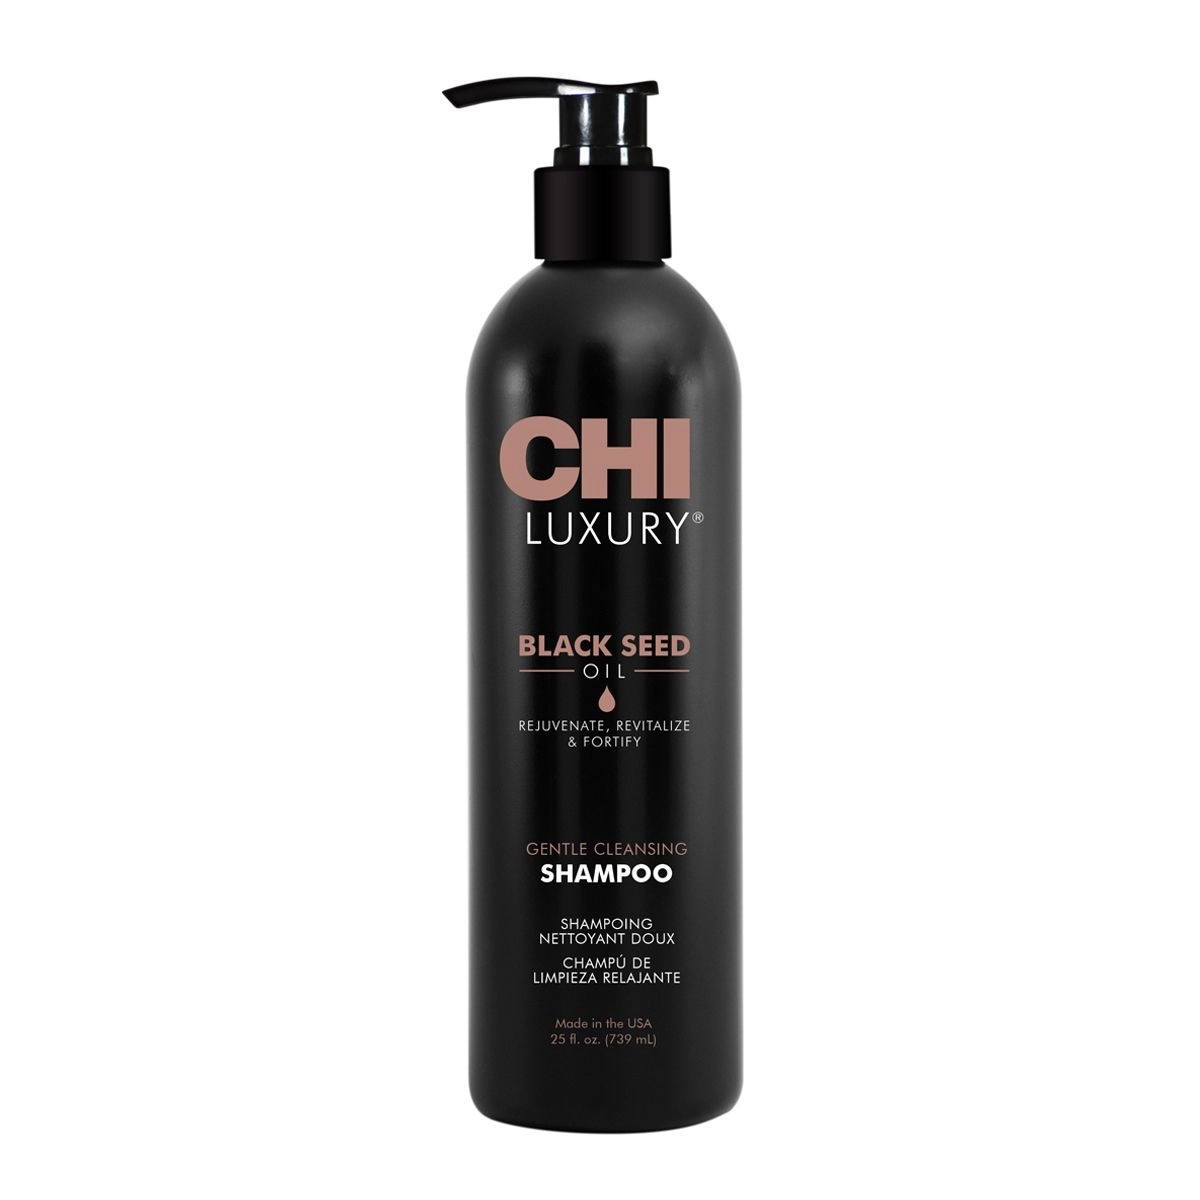 Нежный очищающий шампунь для волос с маслом черного тмина - CHI Luxury Black Seed Oil Gentle Cleansing, 739 мл - фото N1